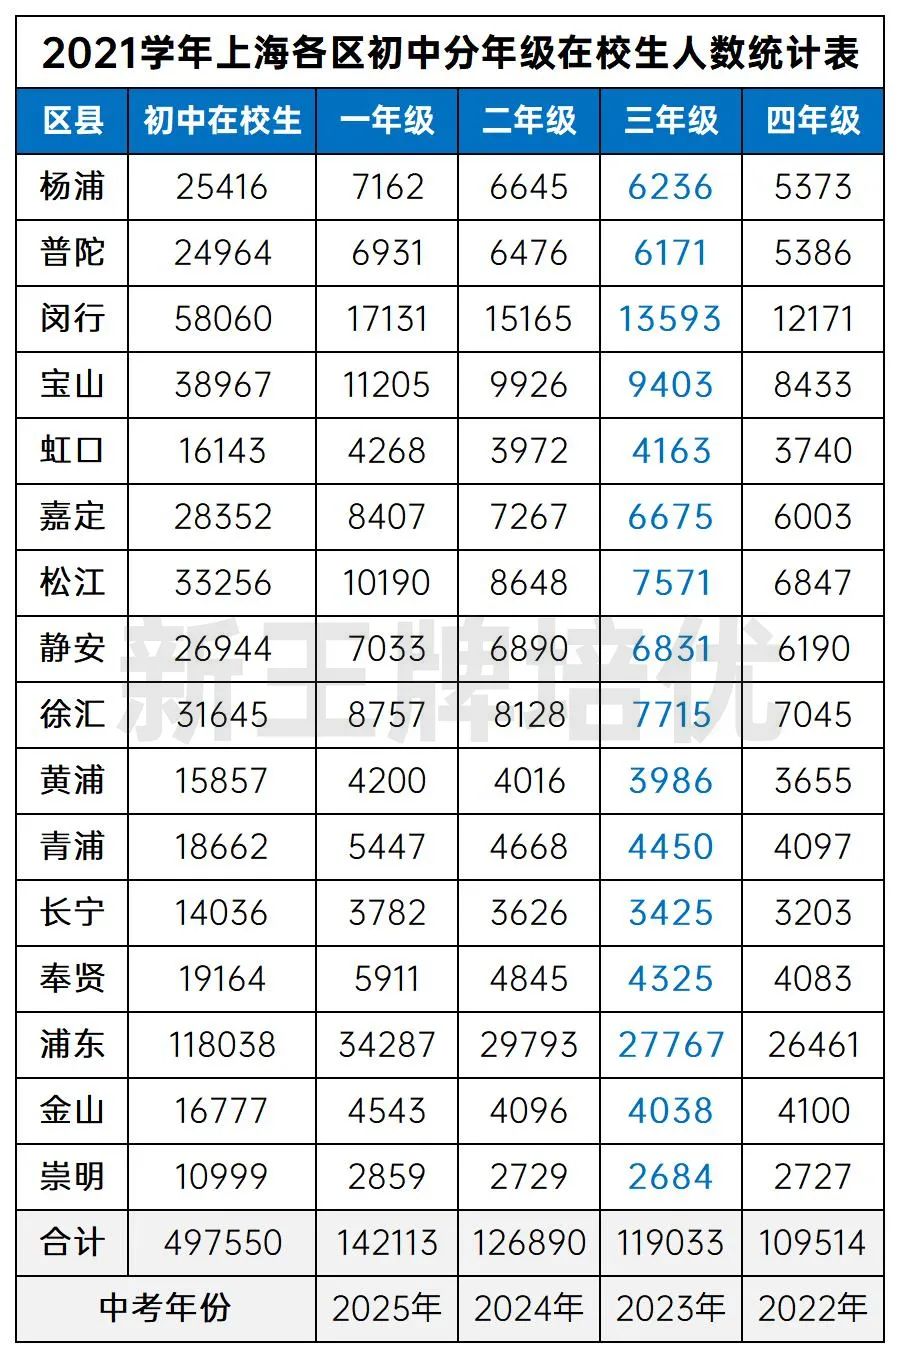 2021学年上海各区初中分年级在校生人数统计表